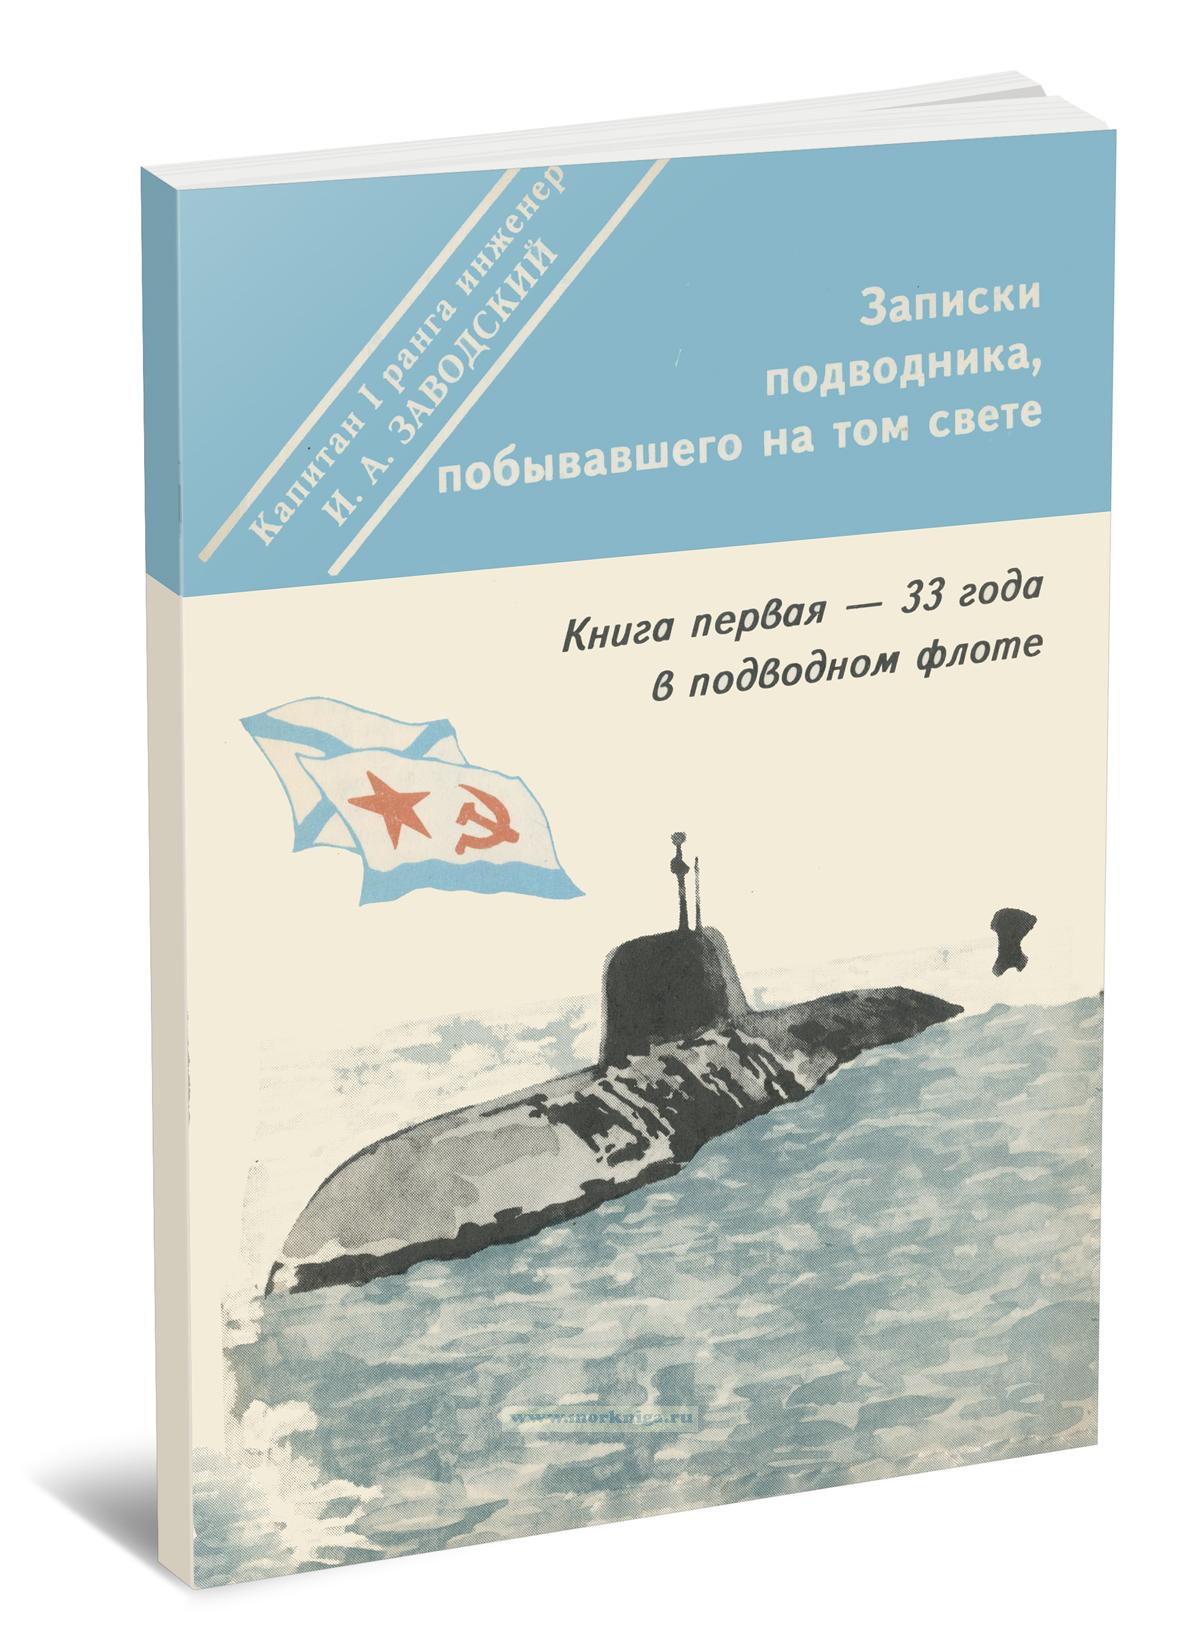 Записки подводника, побывавшего на том свете. Книга первая - 33 года в подводном флоте